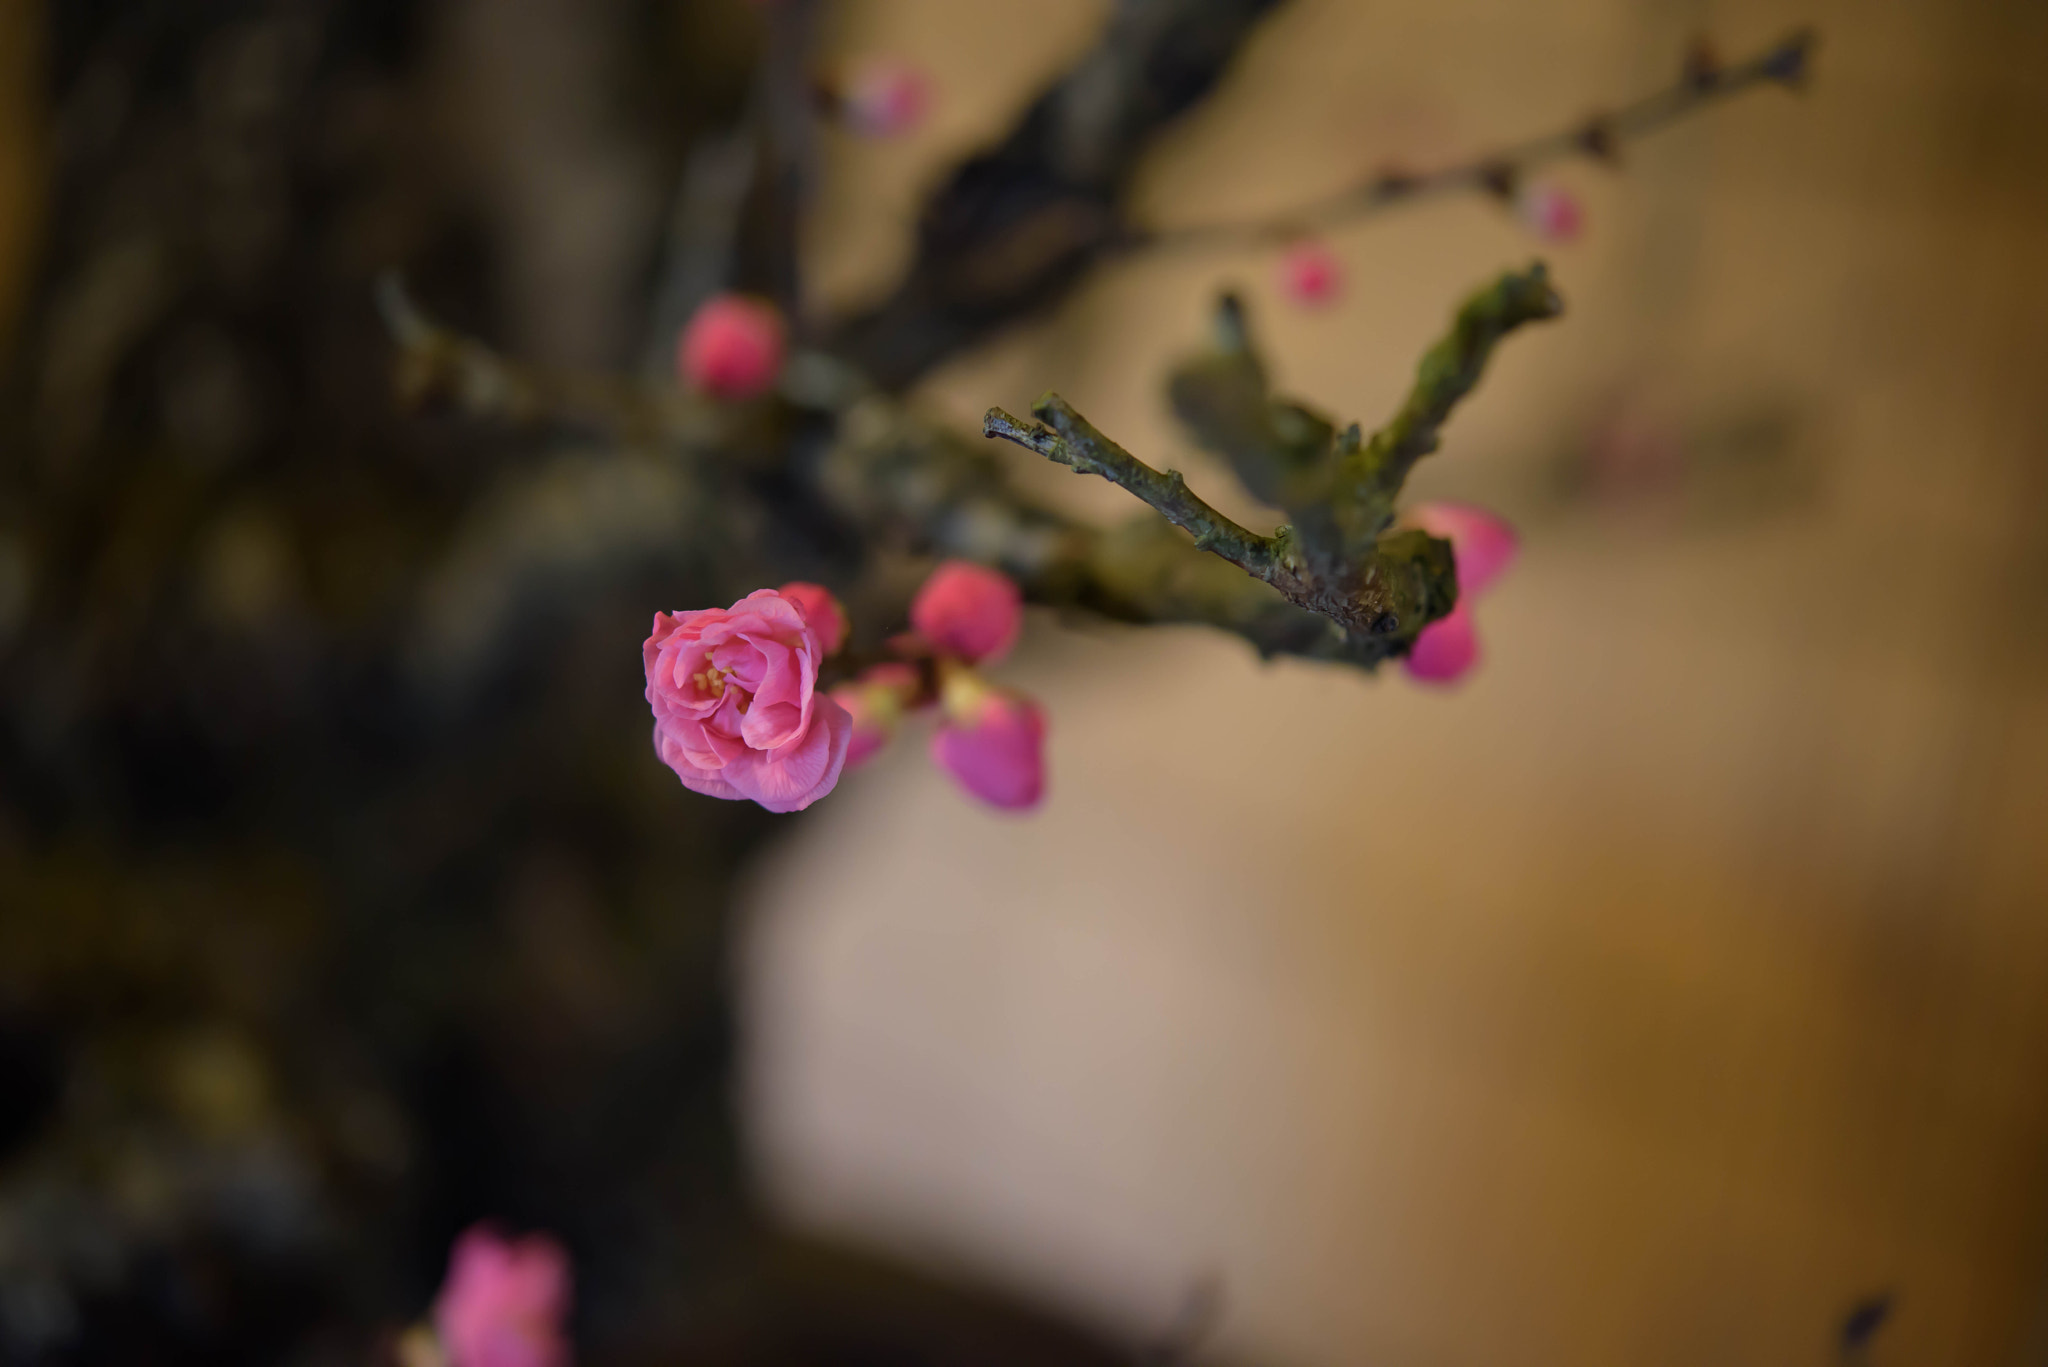 Nikon D810 sample photo. Bonbai (bonsai of japanese apricot tree) photography